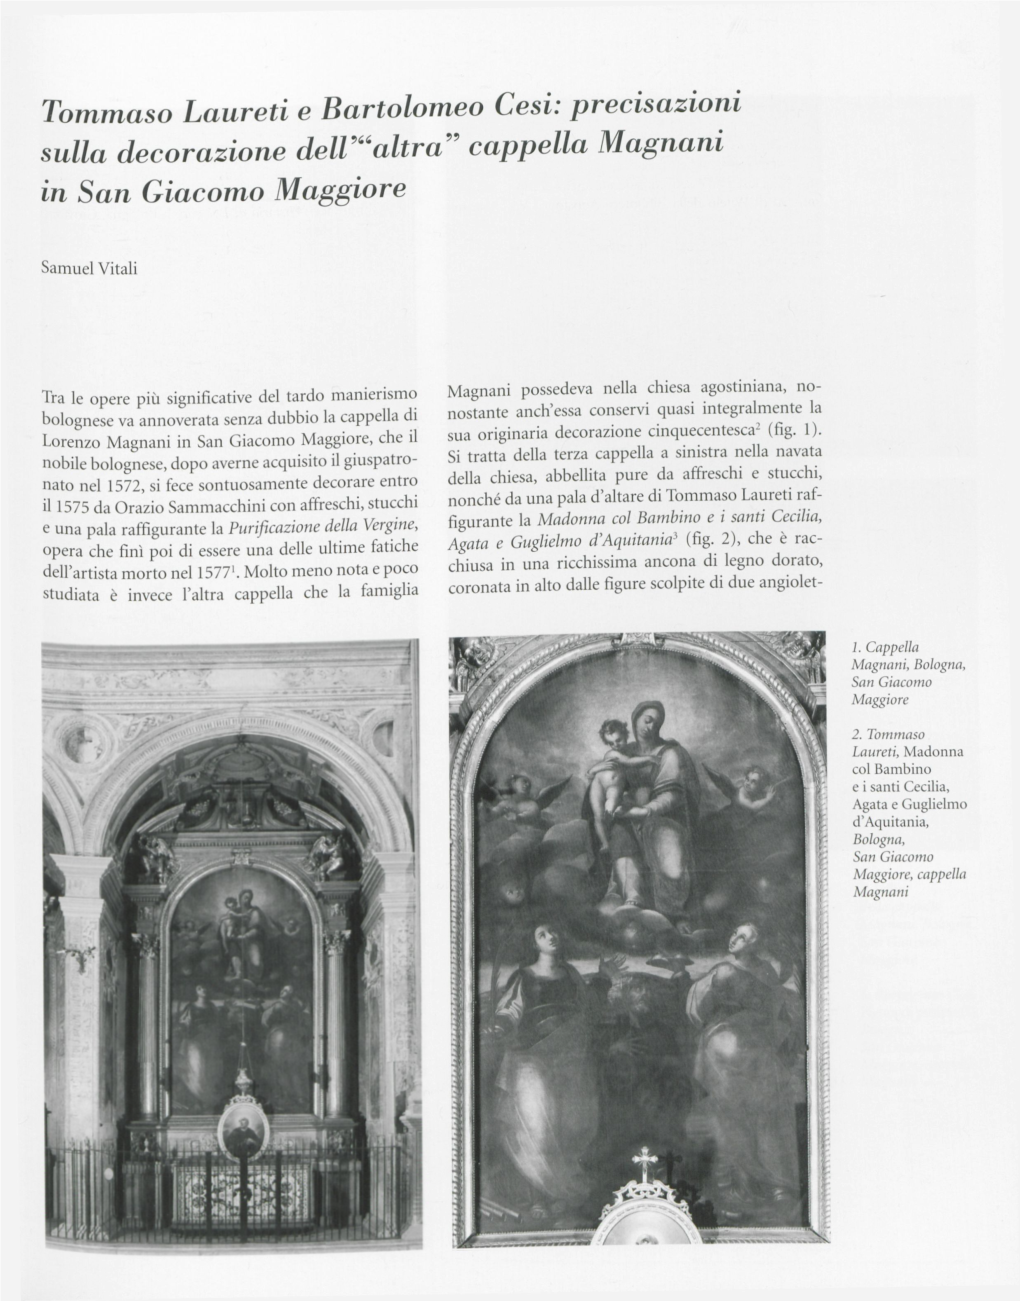 Tommaso Laureti E Hartolomeo Cesi: Precisazioni Sulla Decorazione Delt“Altra Cappella Magnani in San Giacomo Maggiore